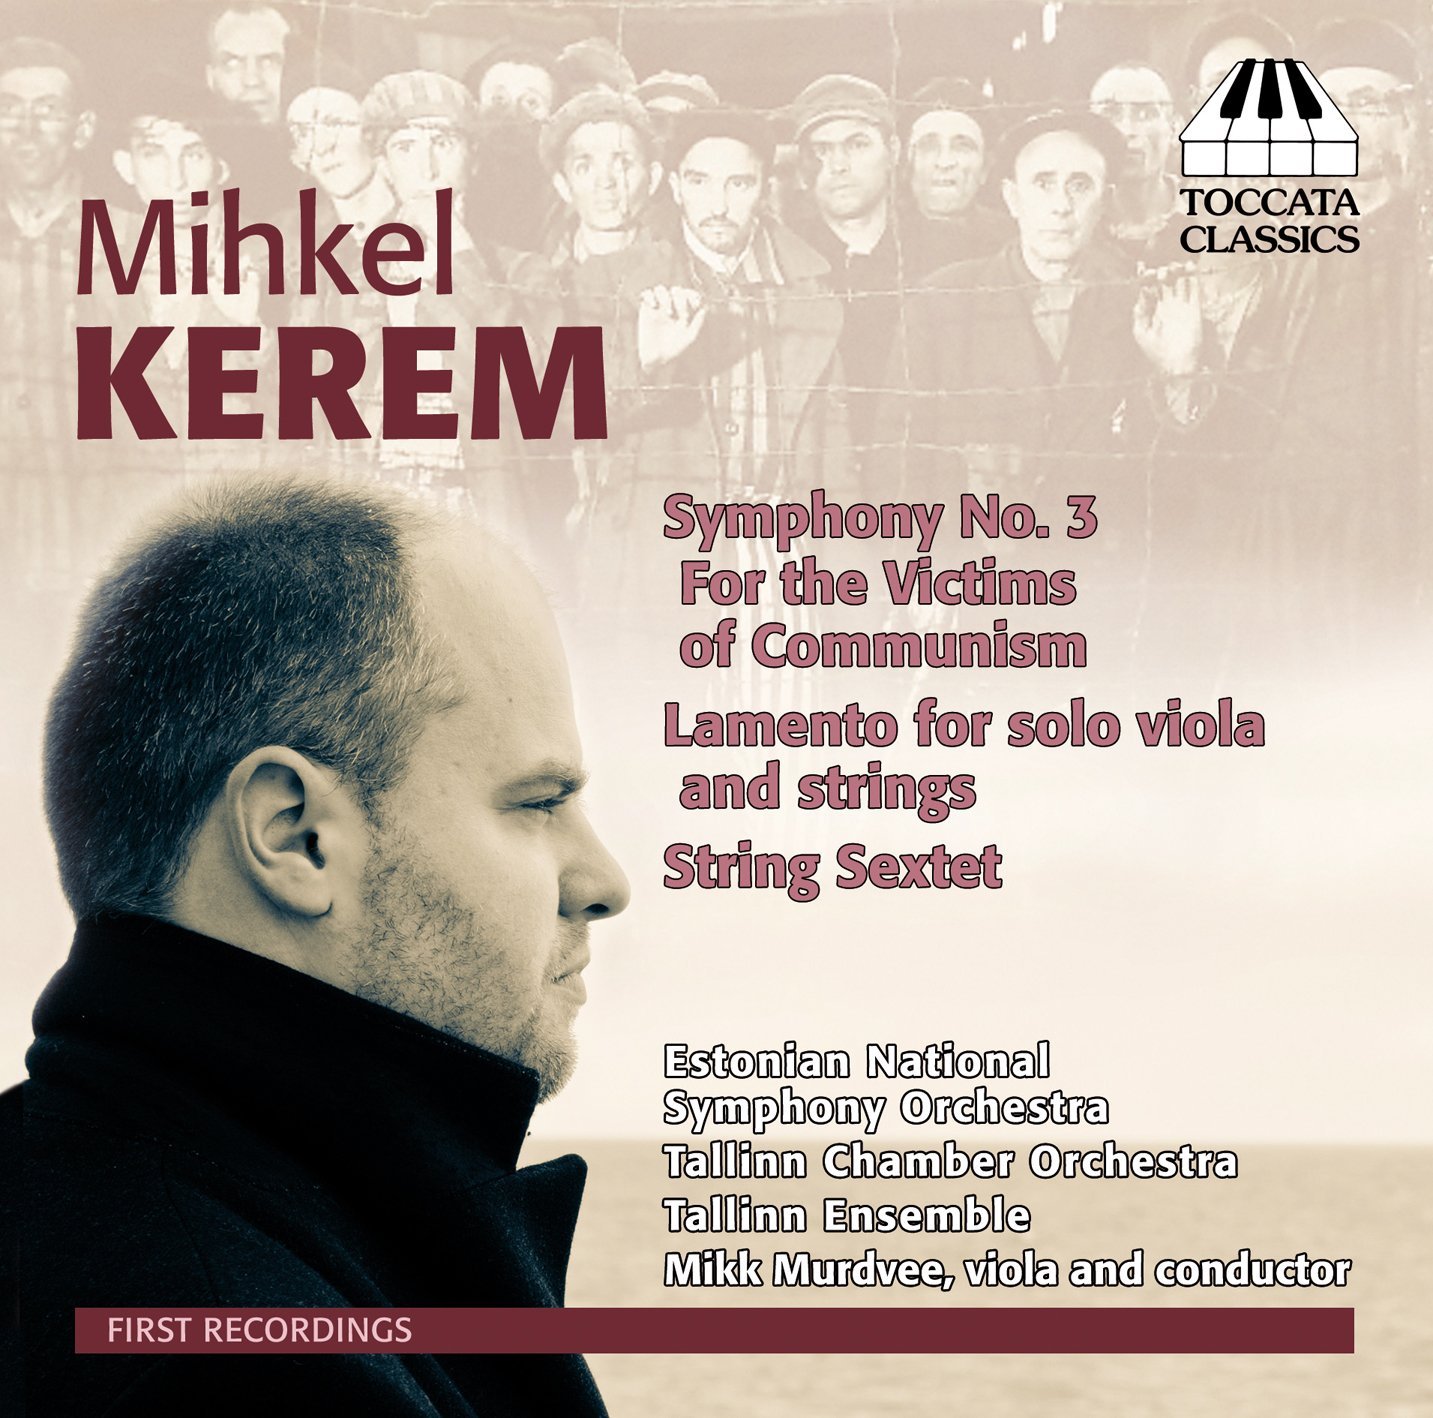 MIHKEL KEREM. Premiere recording. Mikk Murdvee. Toccata Classics 2013